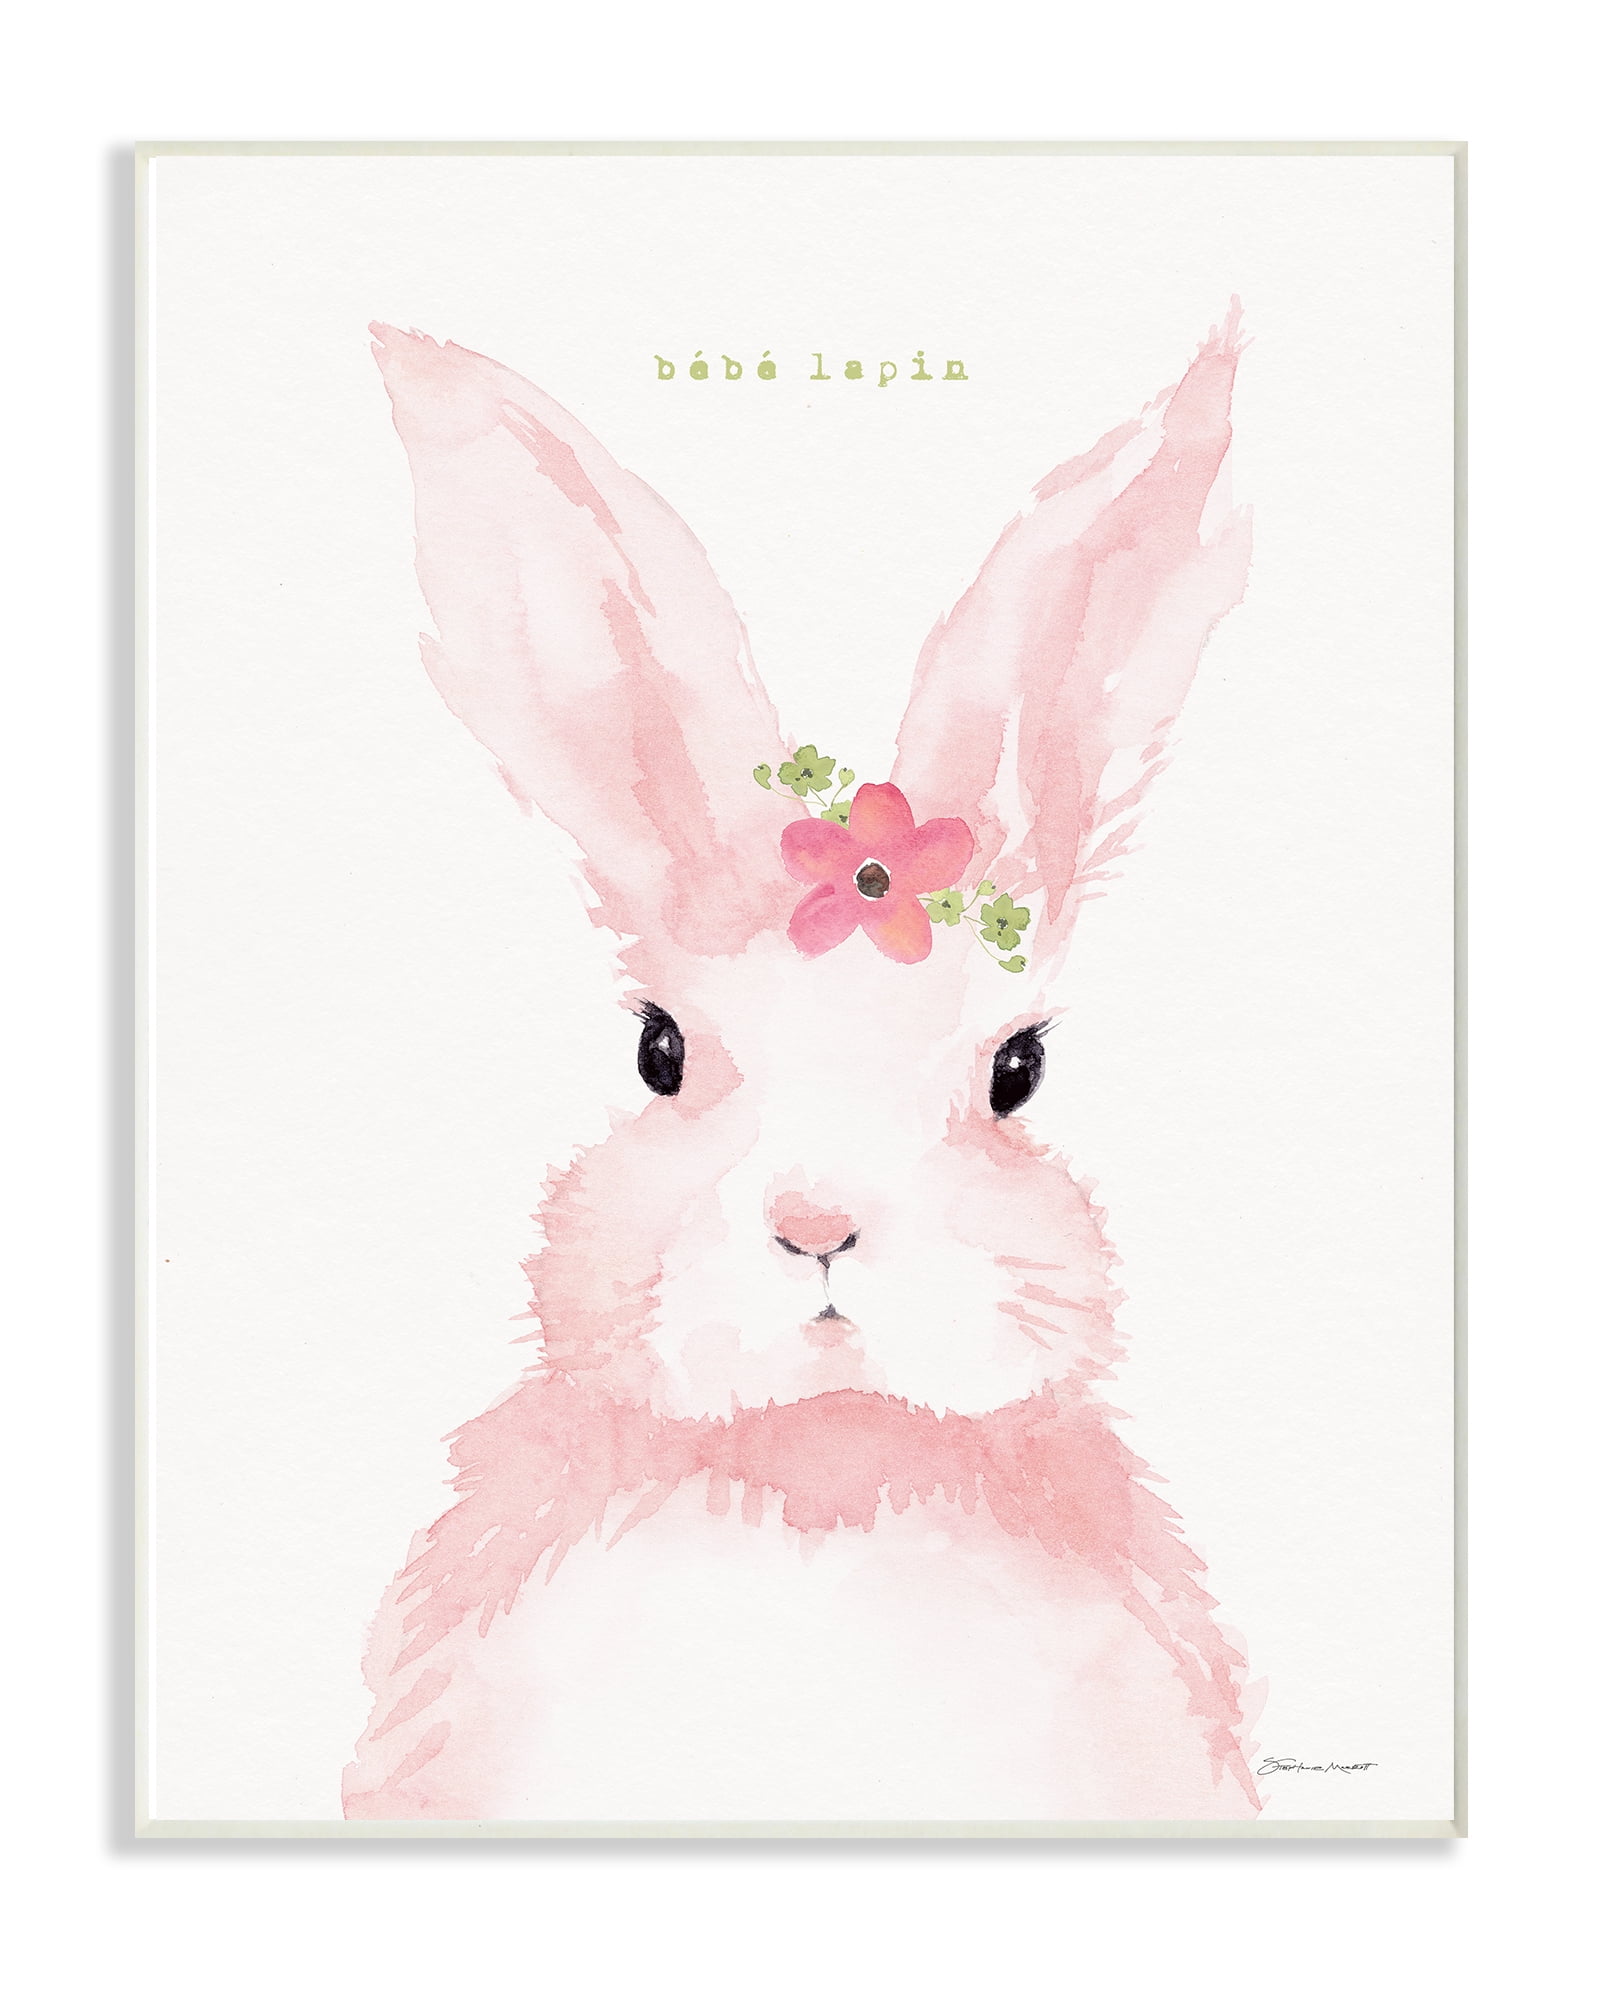 Lapin Poster Humoristique Pour Wc,Toile Noir Et Blanc Art Mural,Bunny  Toilette Affiche Drôle,Rabbit Toile Murale Moderne Ave[u1233] - Cdiscount  Maison